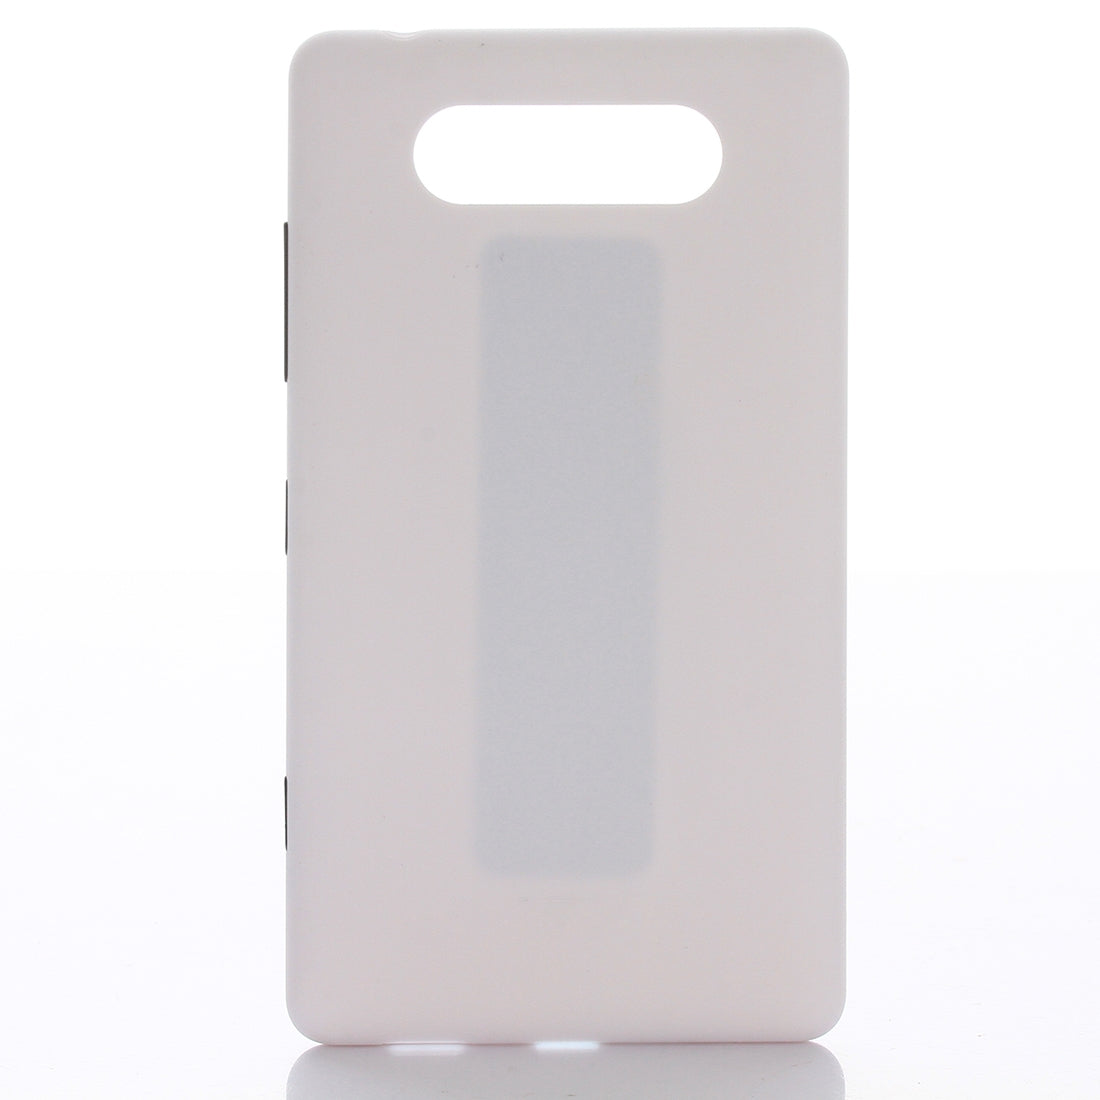 Tapa Bateria Back Cover Nokia Lumia 820 Blanco